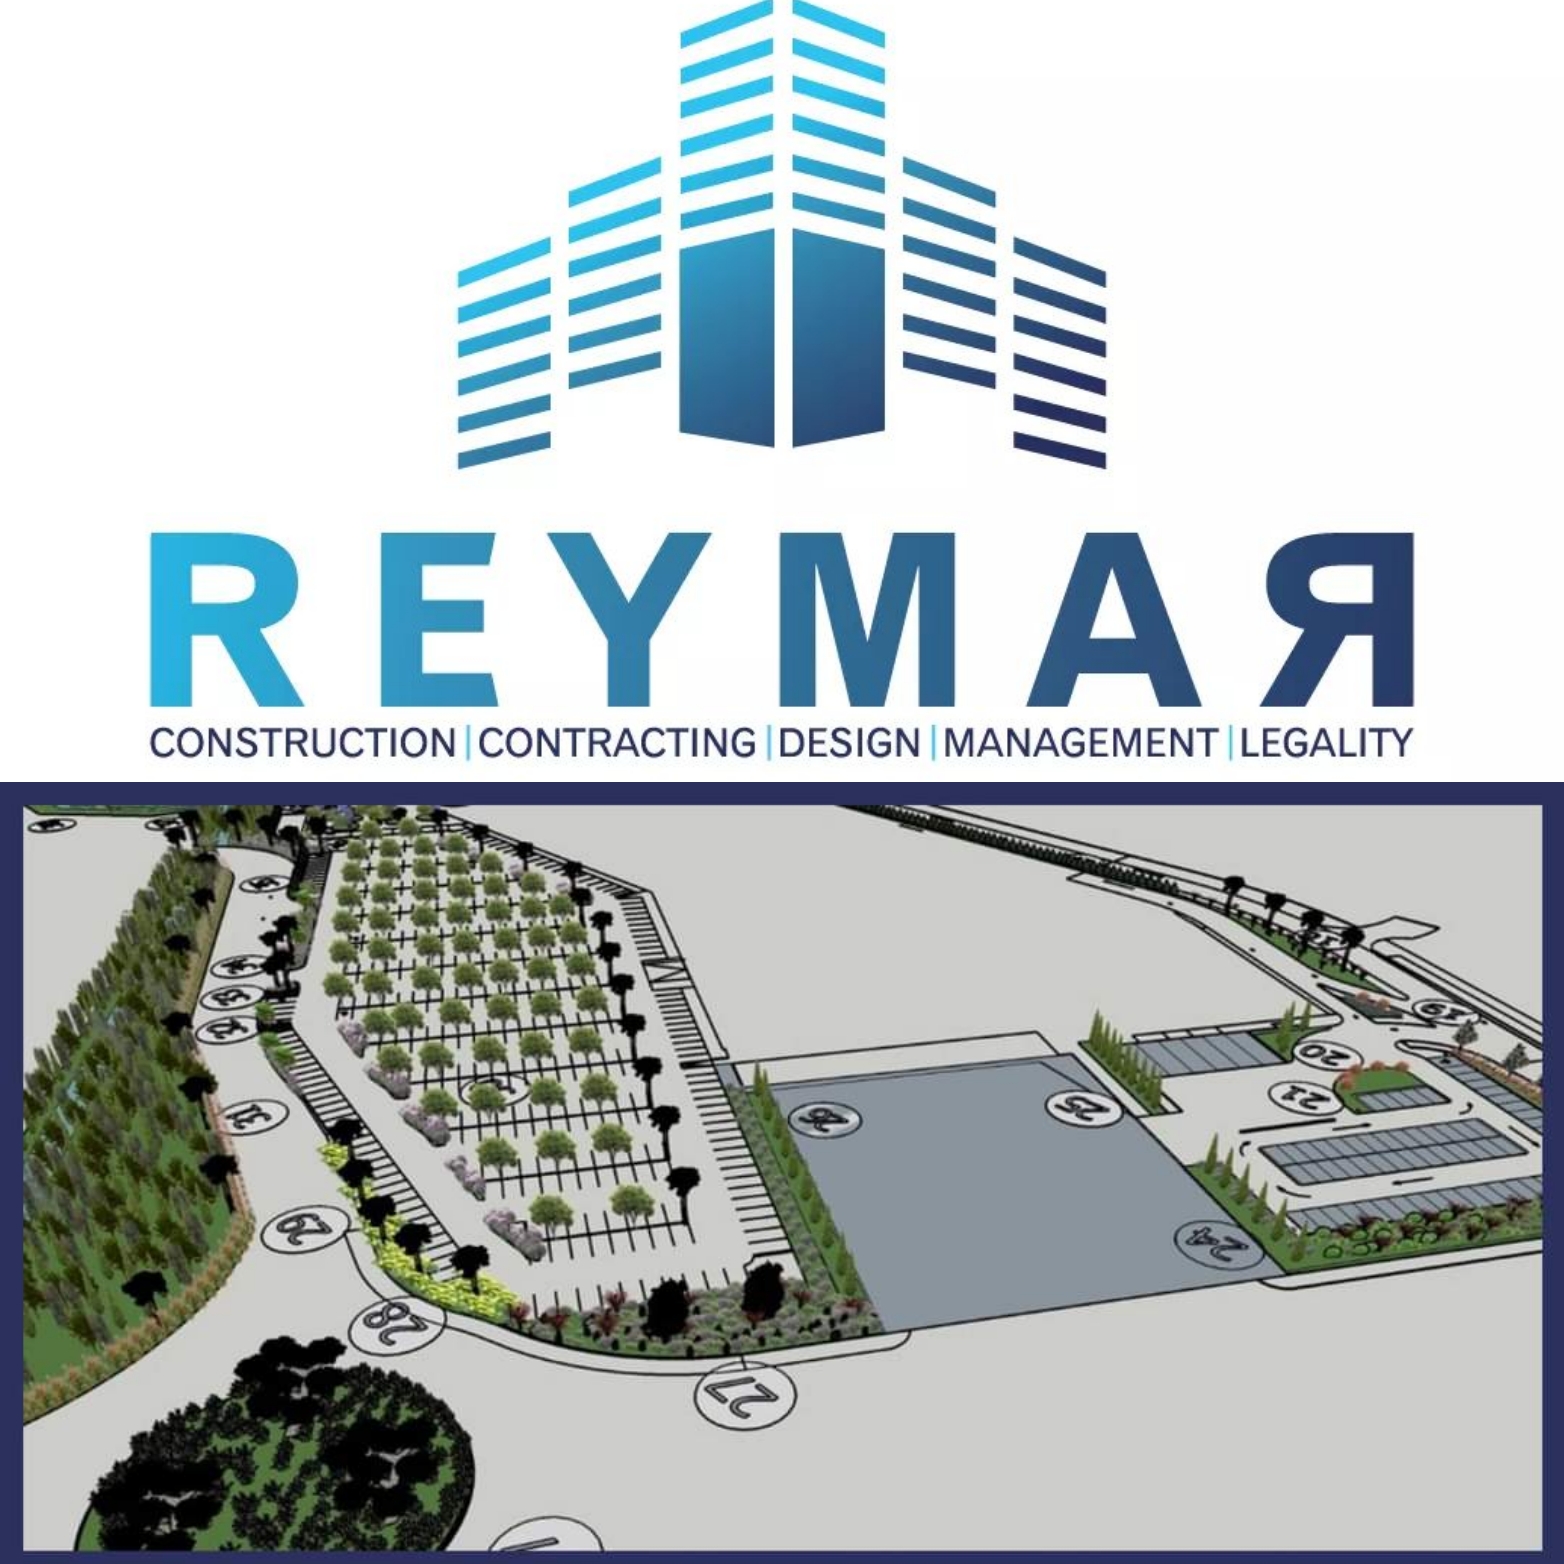 Ο εντυπωσιακός εξωτερικός χώρους του Metropolis Mall έχει σχεδιαστεί απο την Reymar Holdings